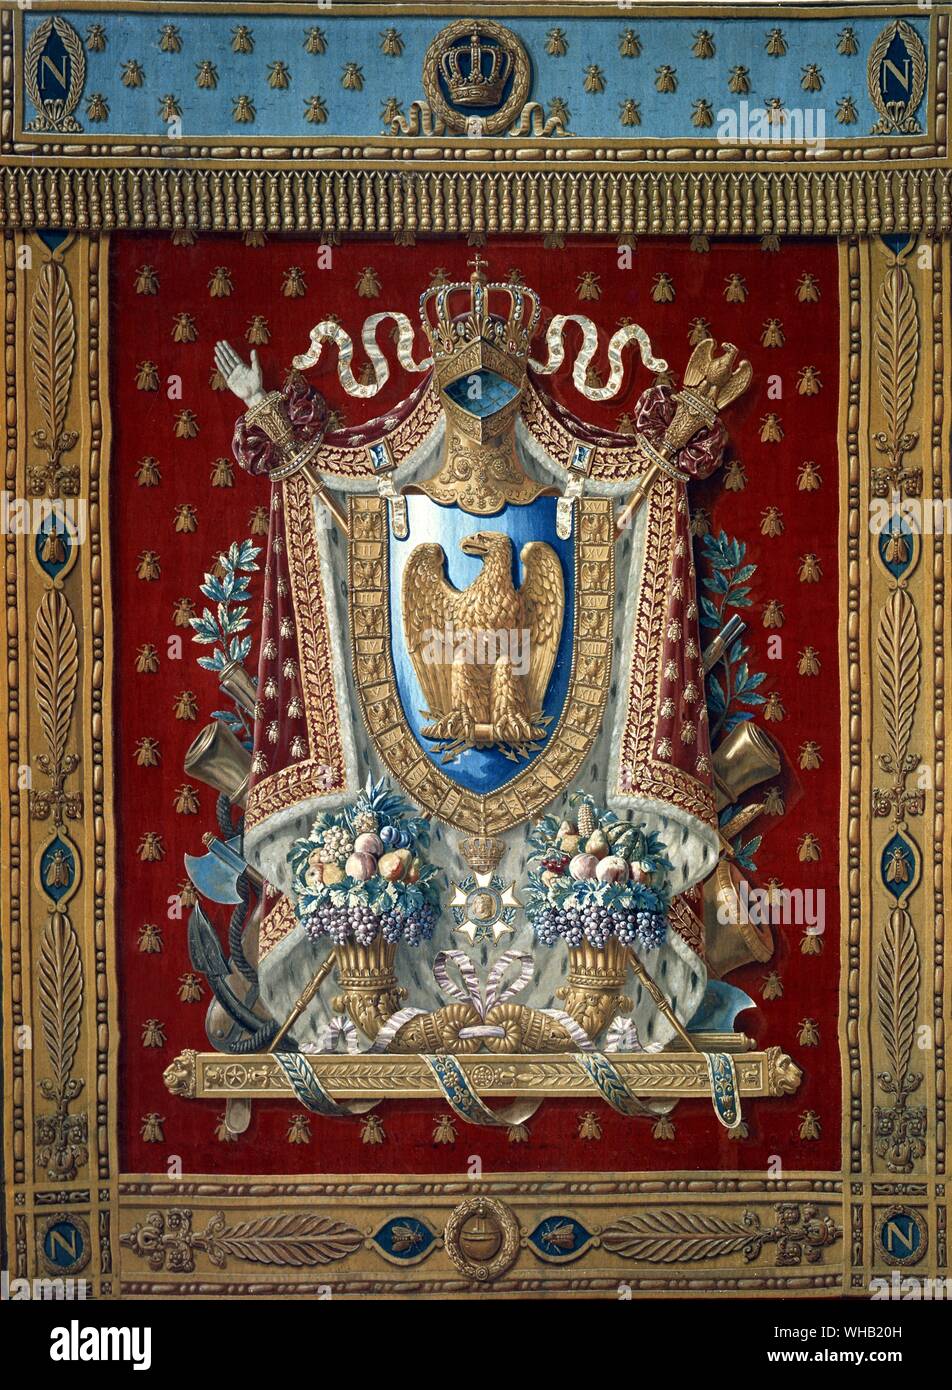 Escudos de Armas en la tapicería - una vez en el estudio de Bonaparte en las Tullerías, ahora en el Chateau de Malmaison. Foto de stock